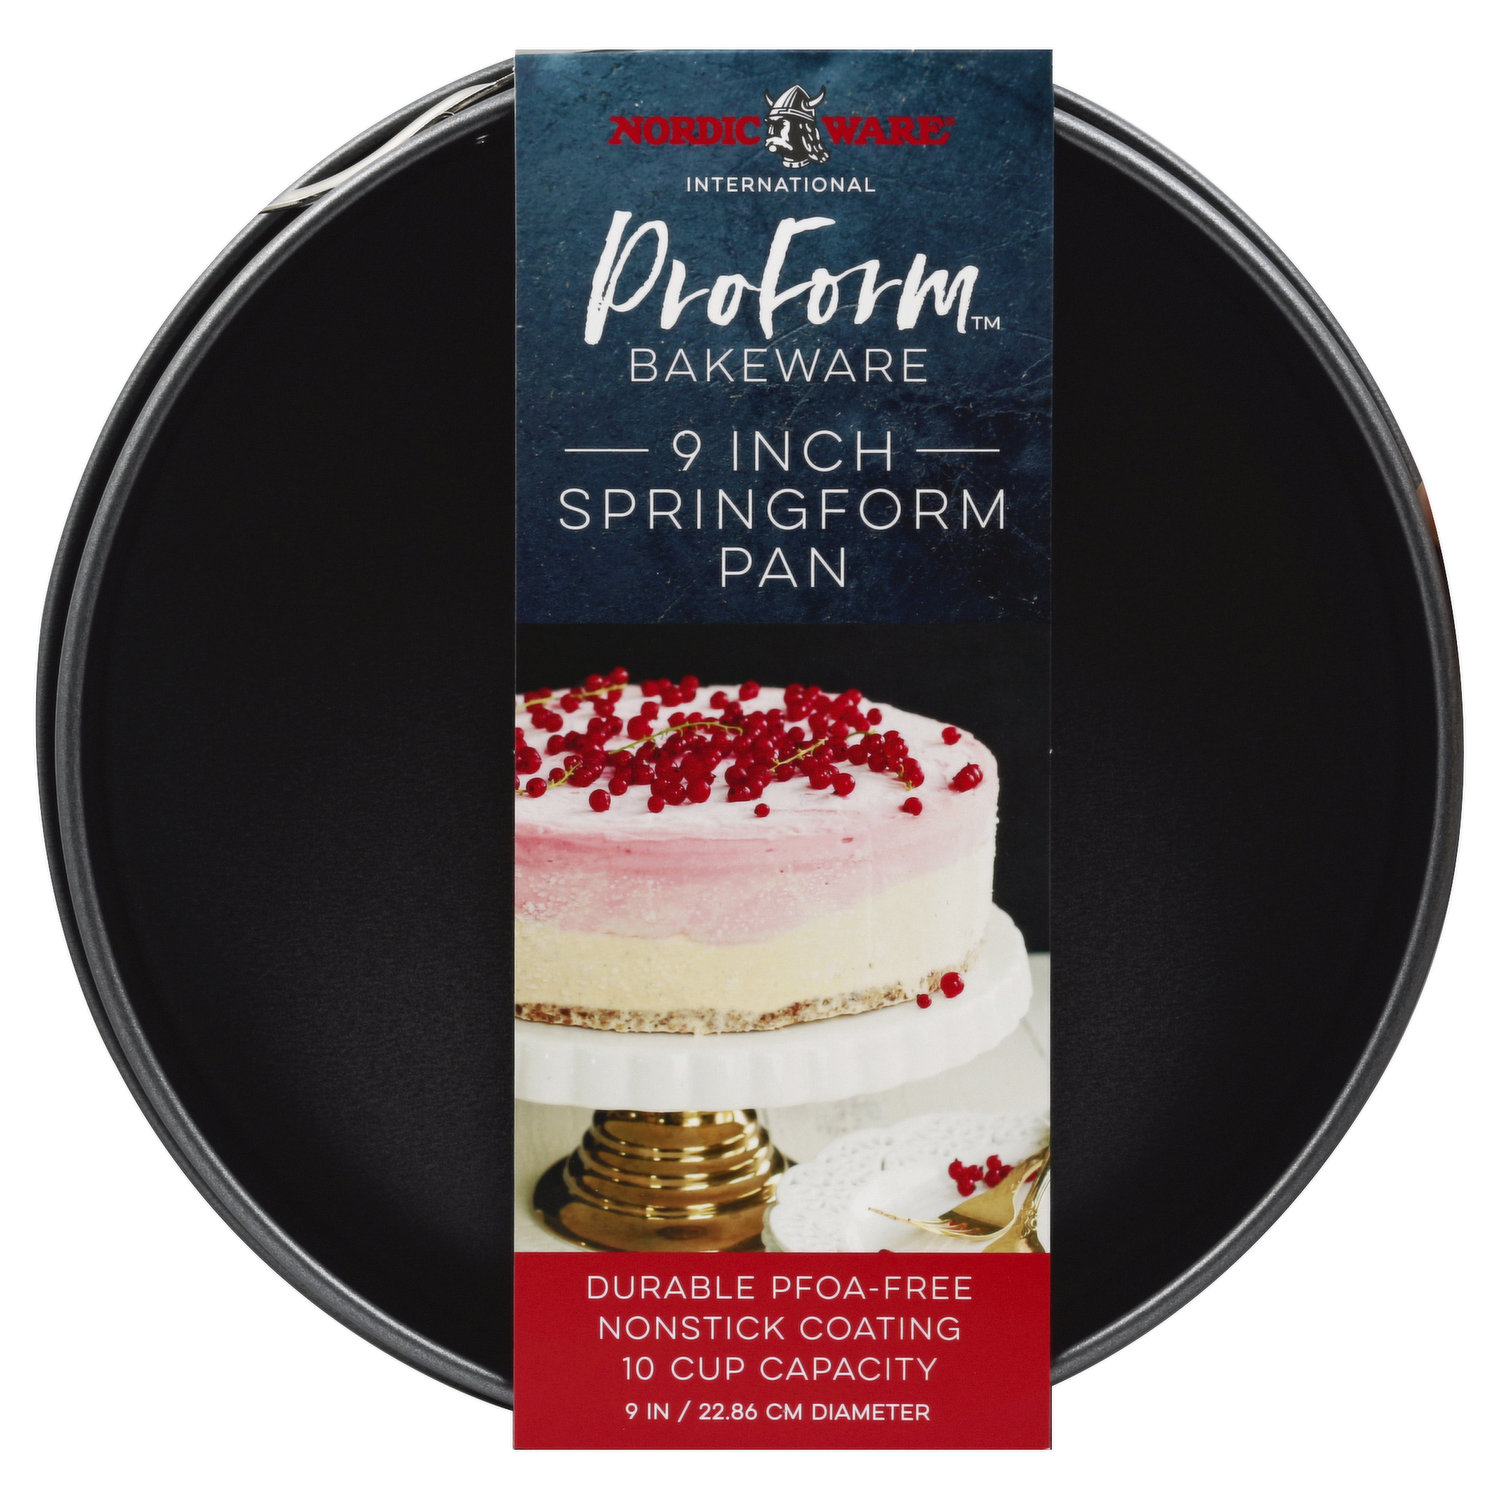 Nordic Ware Proform Bakeware Pan, Springform, 9 Inch